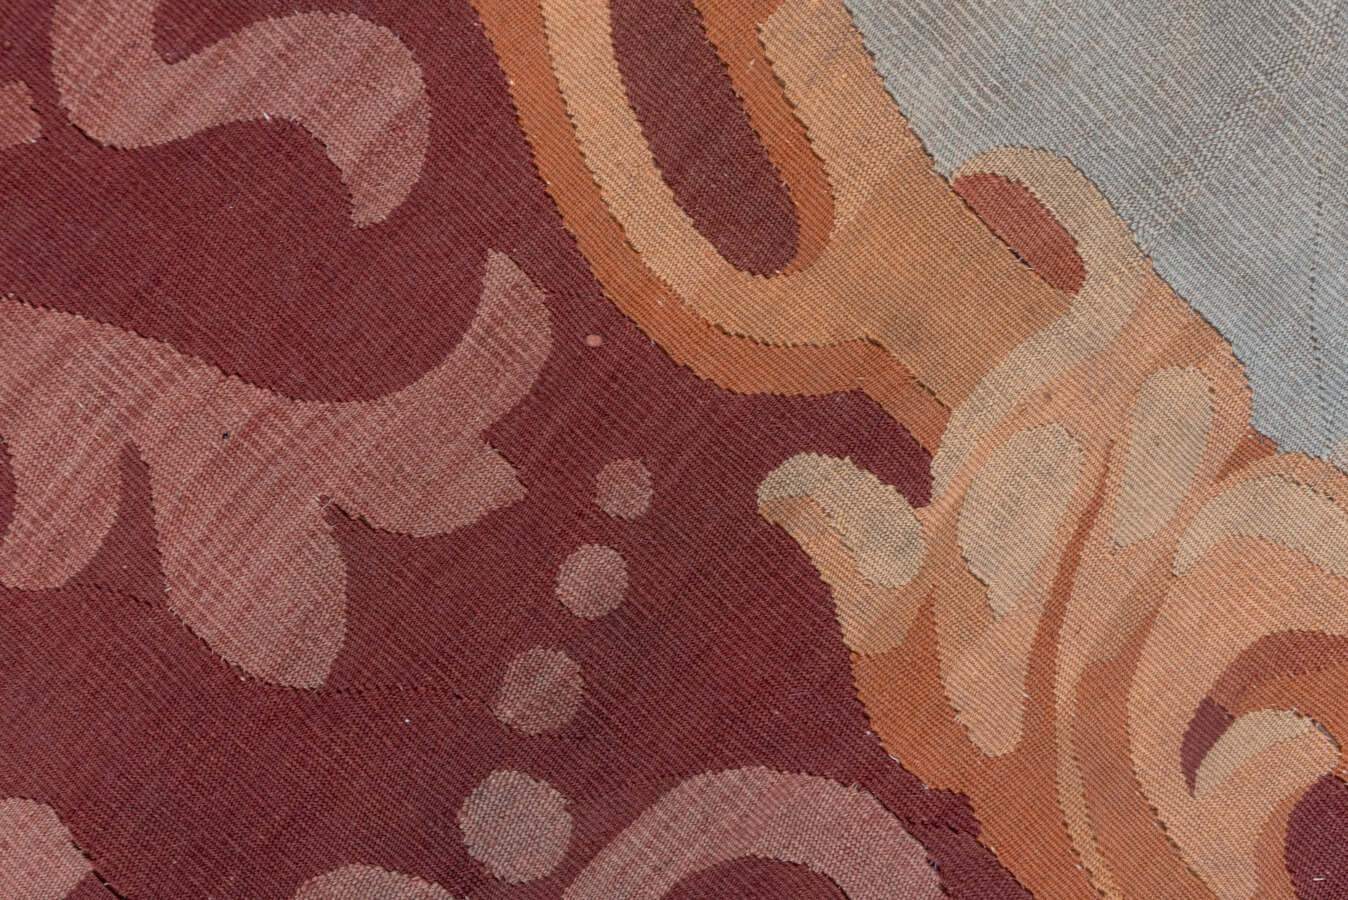 Antique aubusson Carpet - # 55938